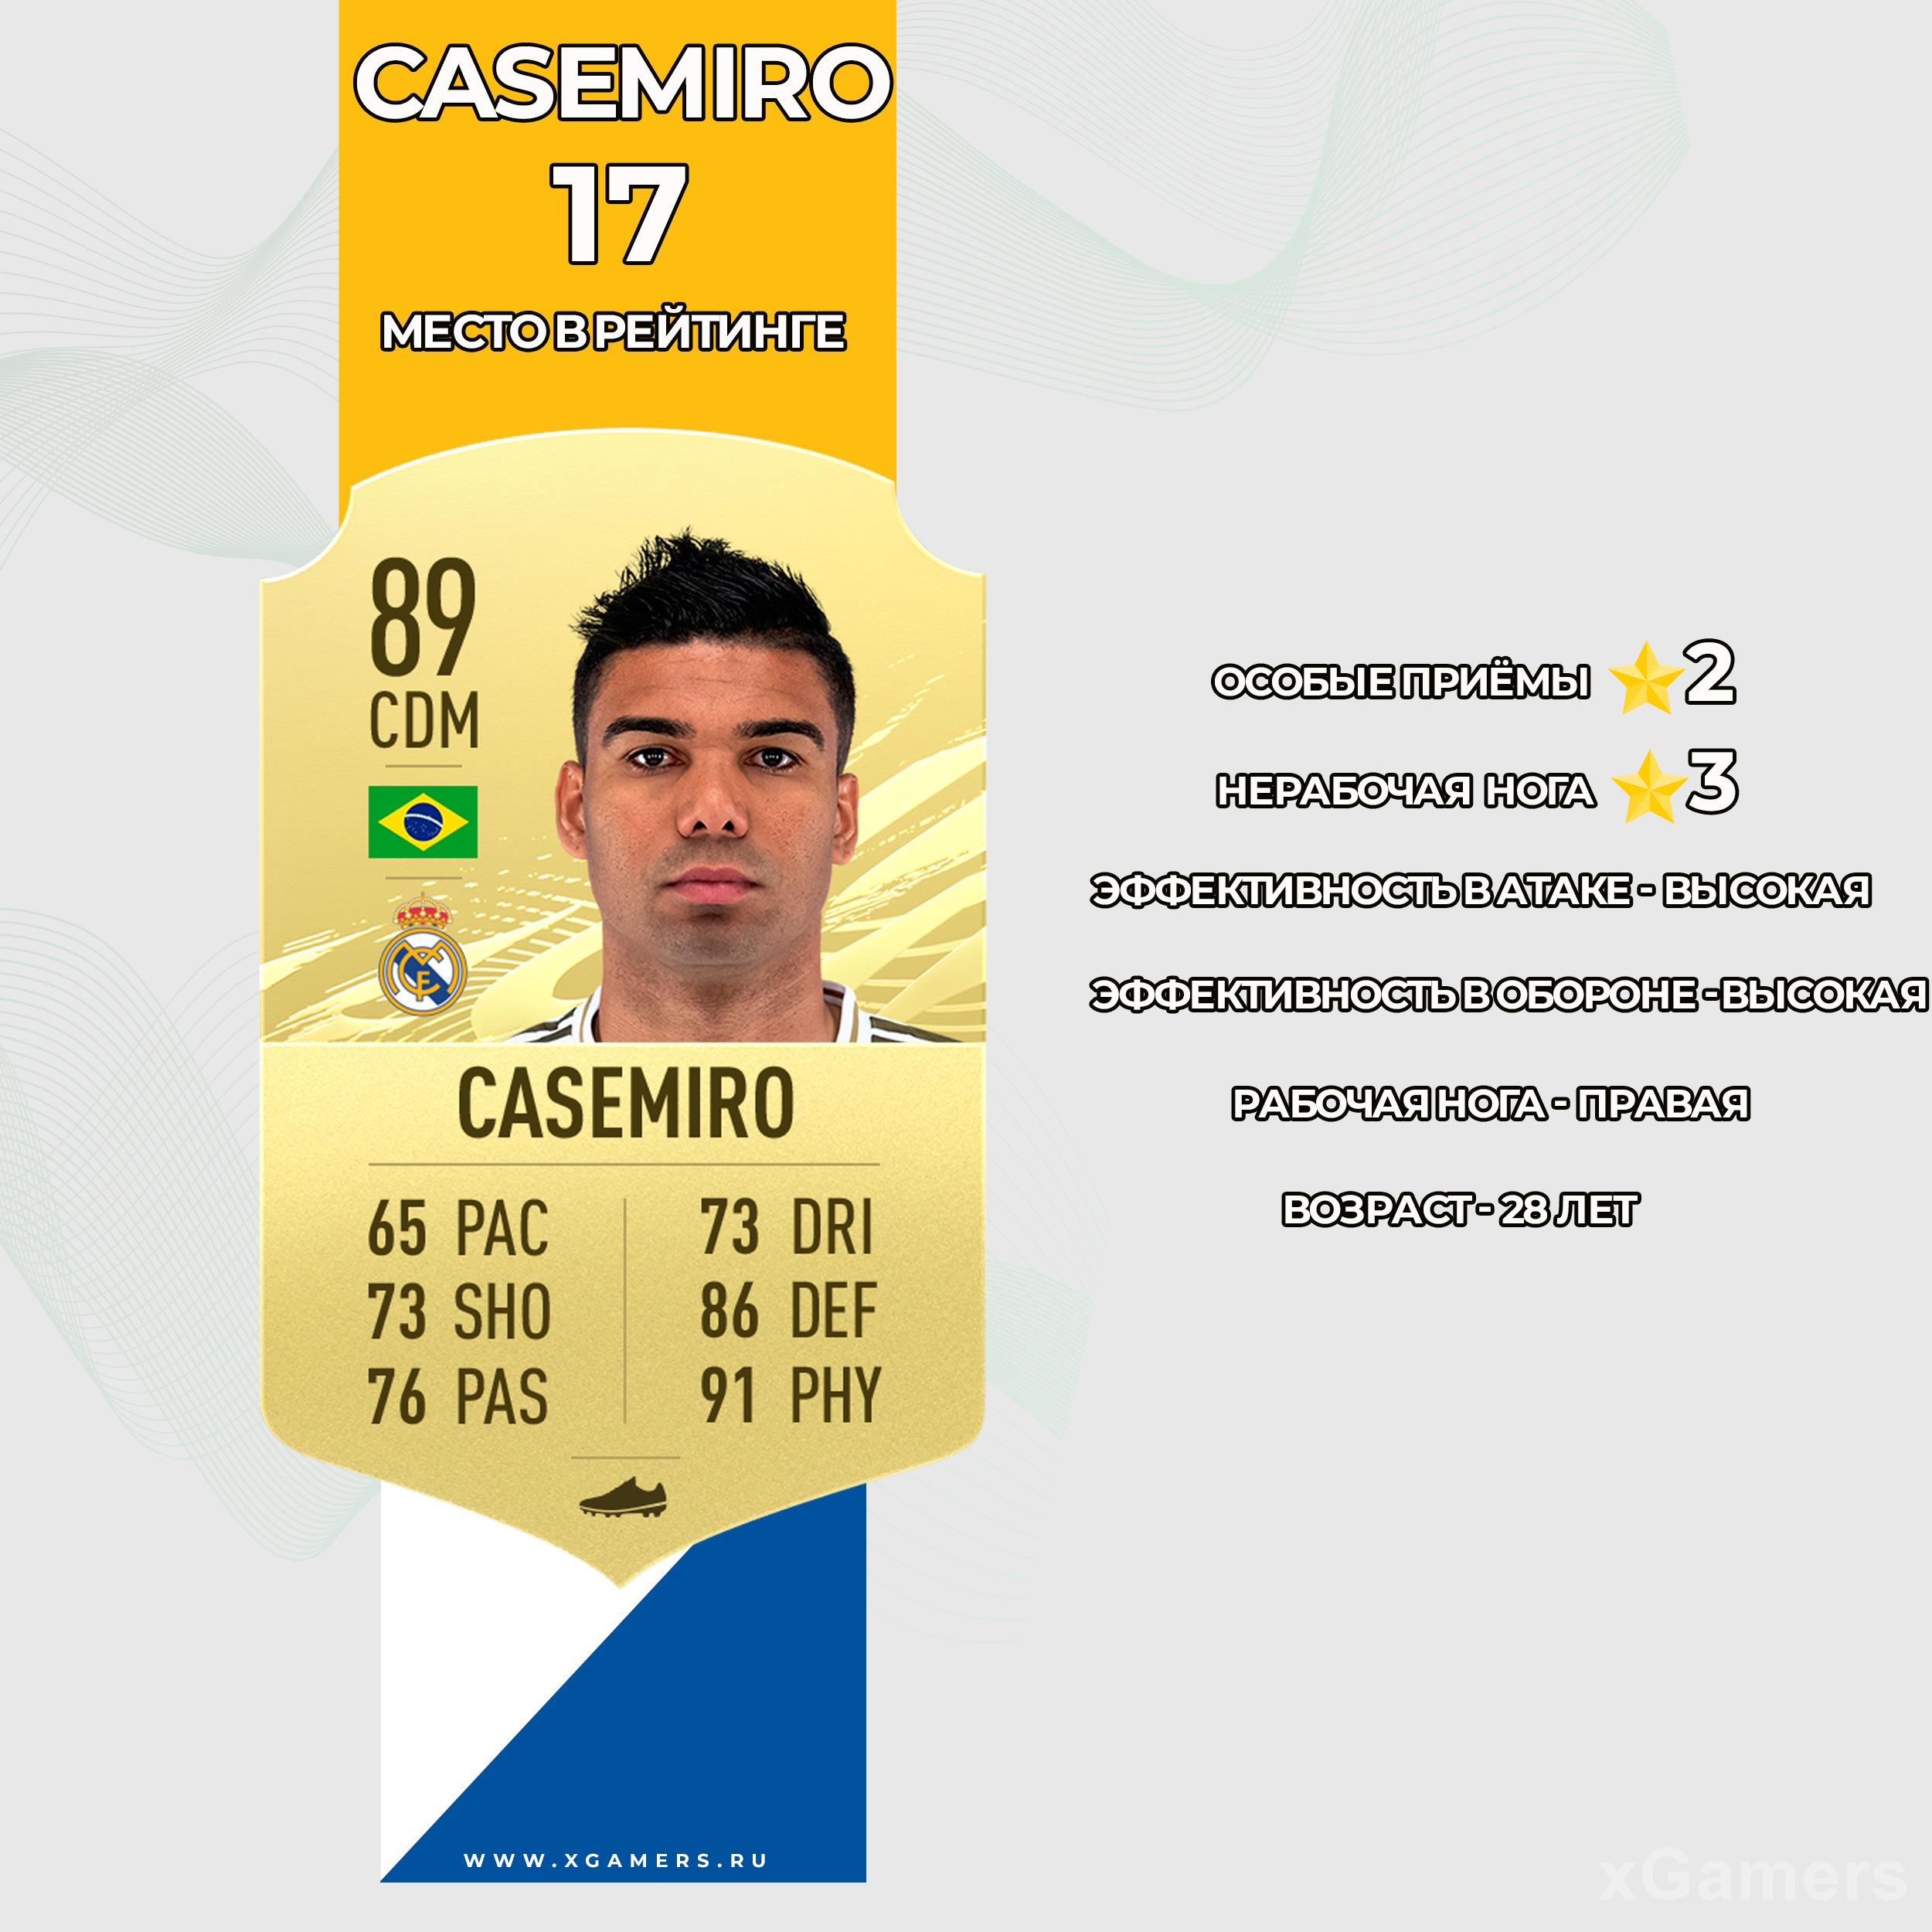 Карточка игрока Реал Мадрида в FIFA 21 - Каземиро